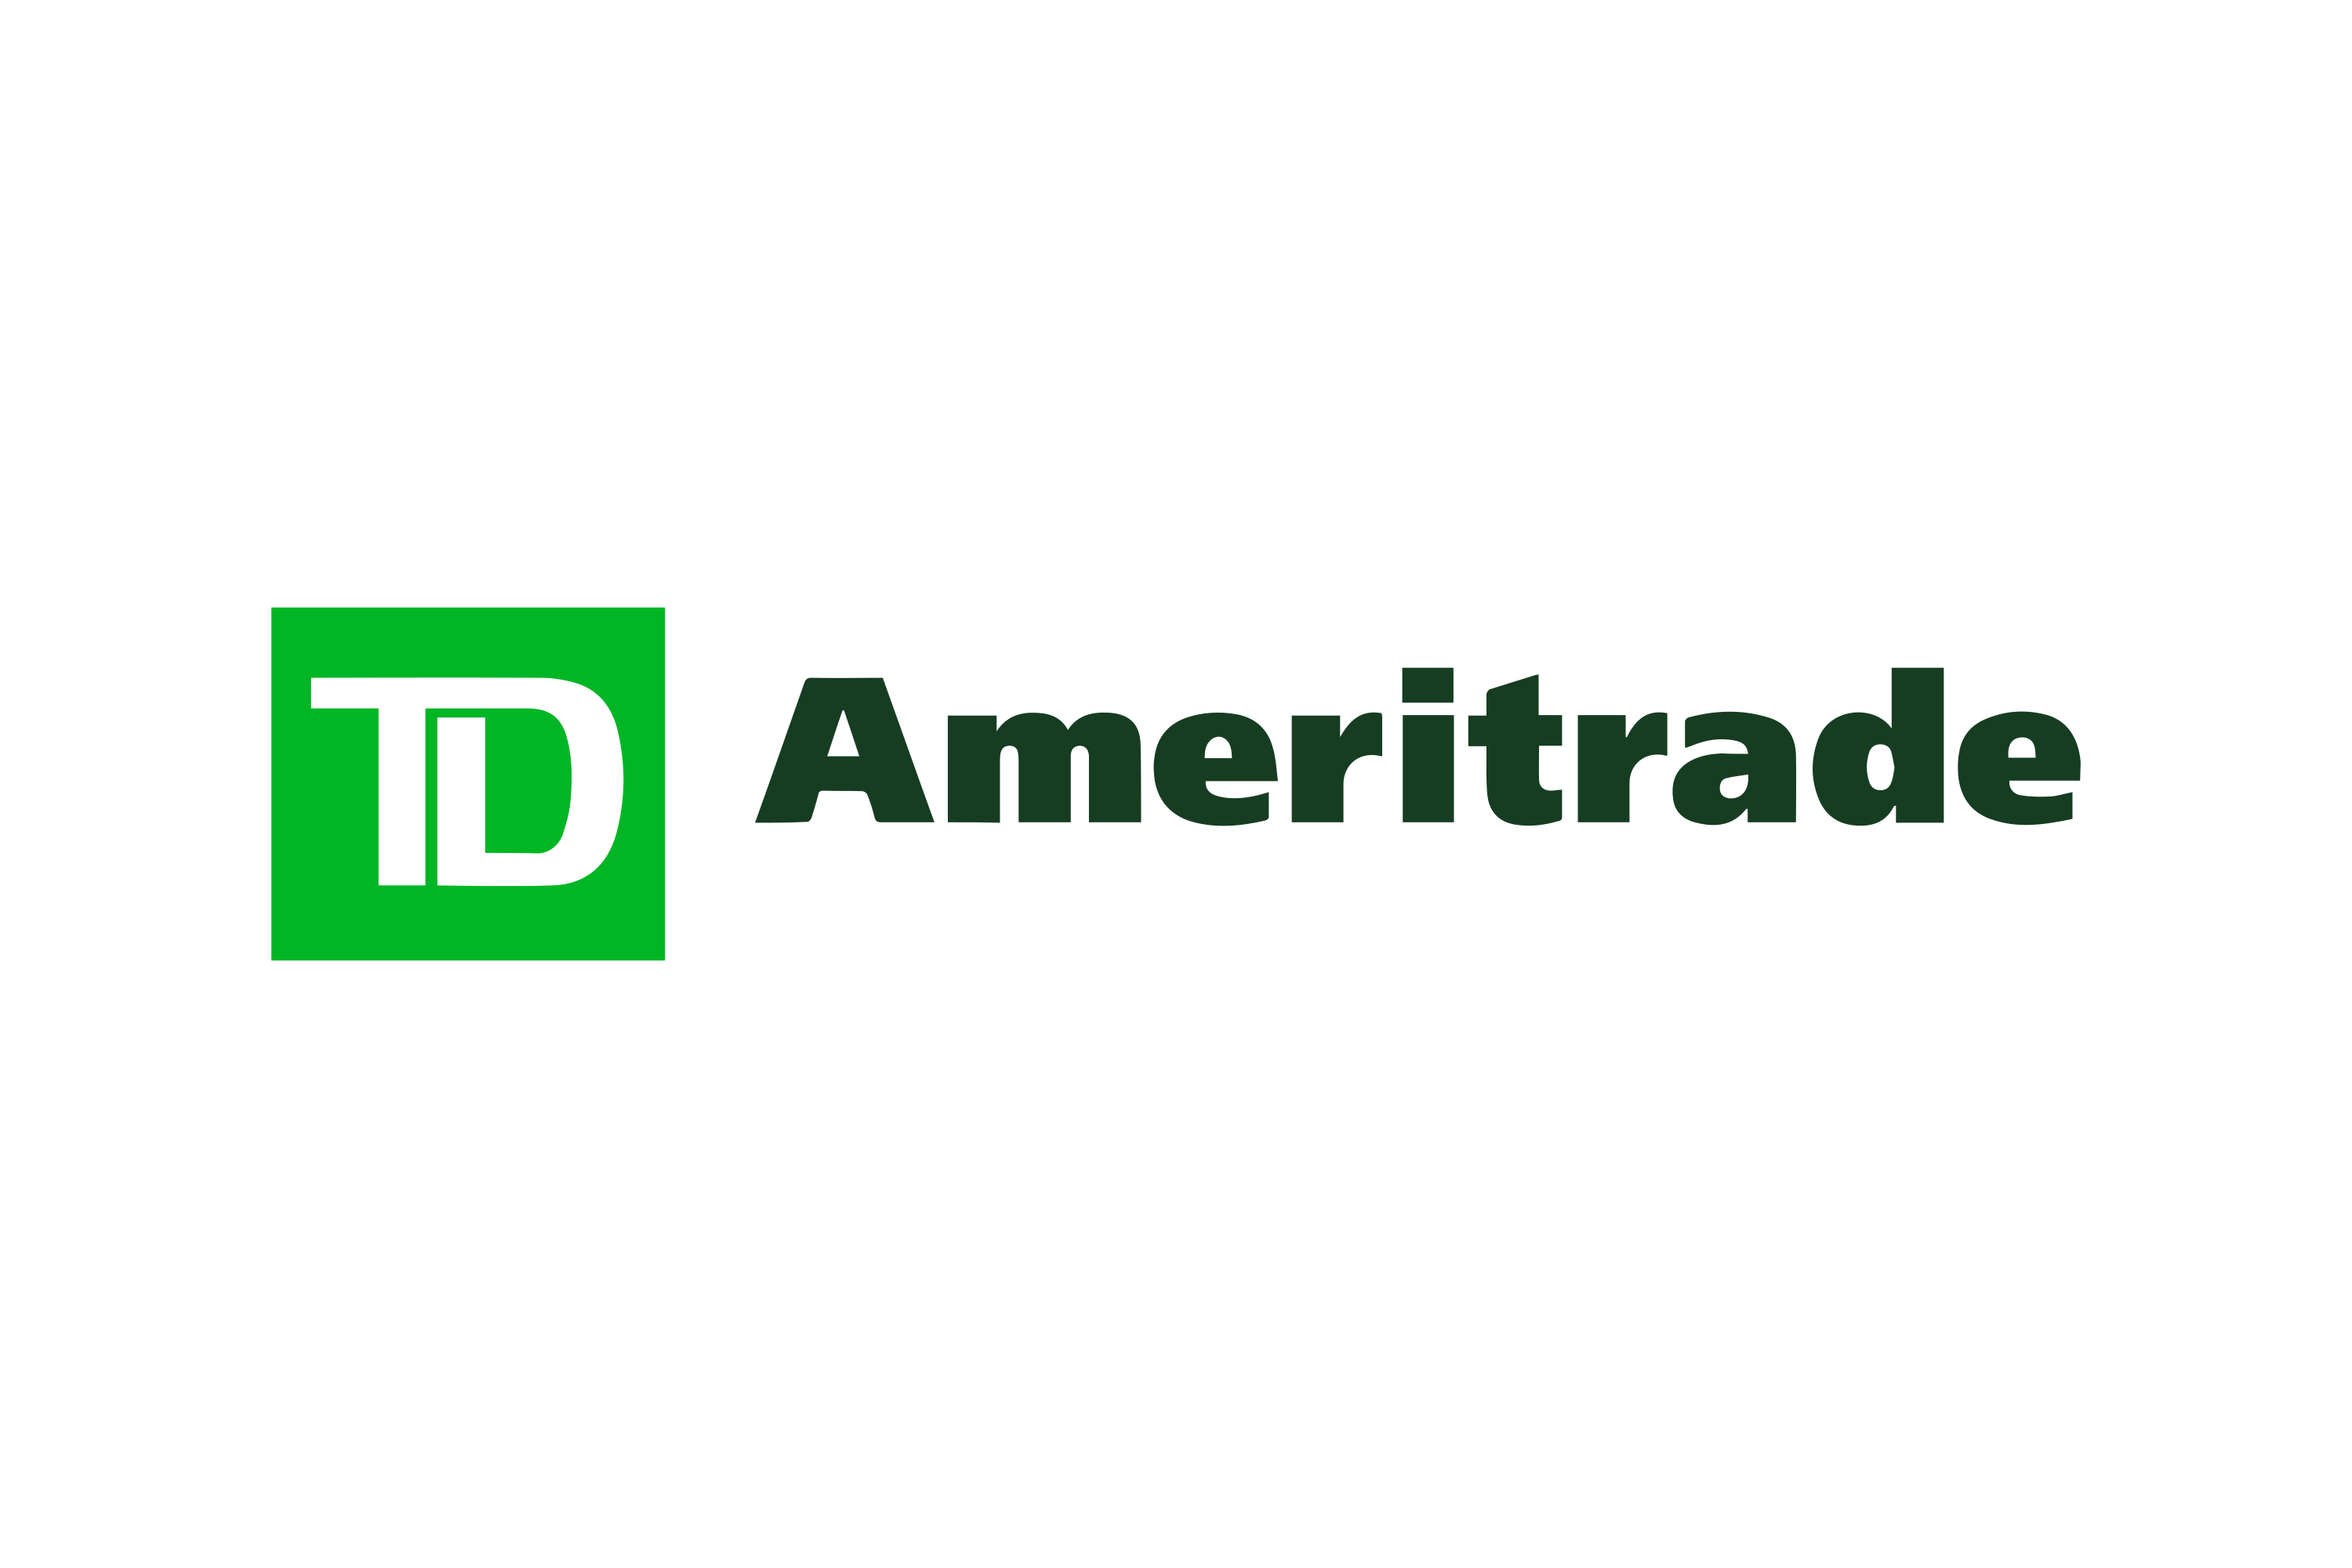 Download TD Ameritrade Logo in SVG Vector or PNG File Format - Logo.wine